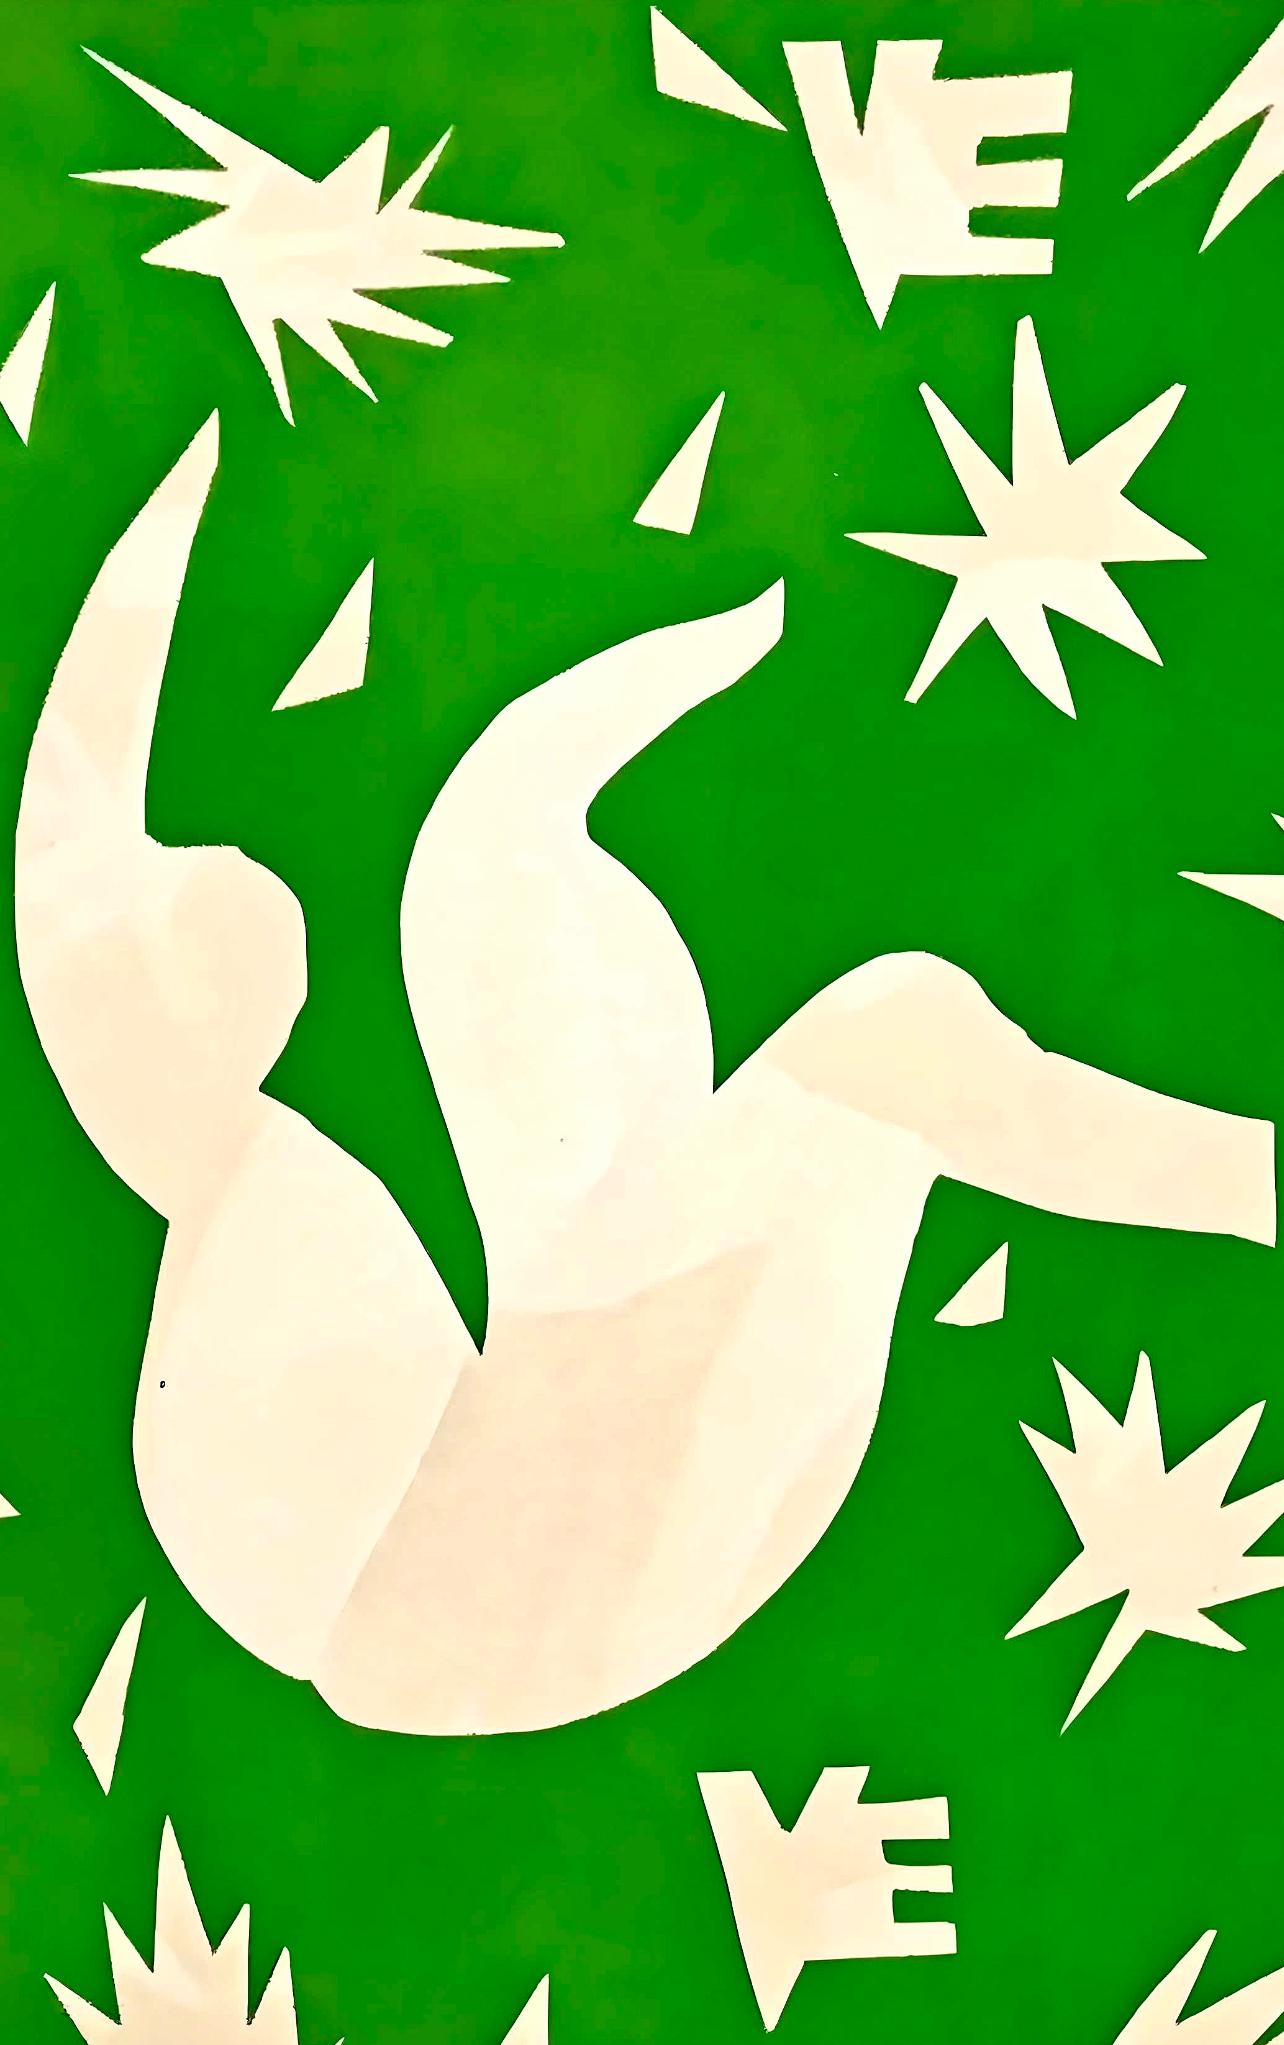 Matisse, Couverture, Verve: Revue Artistique et Littéraire (nach) – Print von Henri Matisse